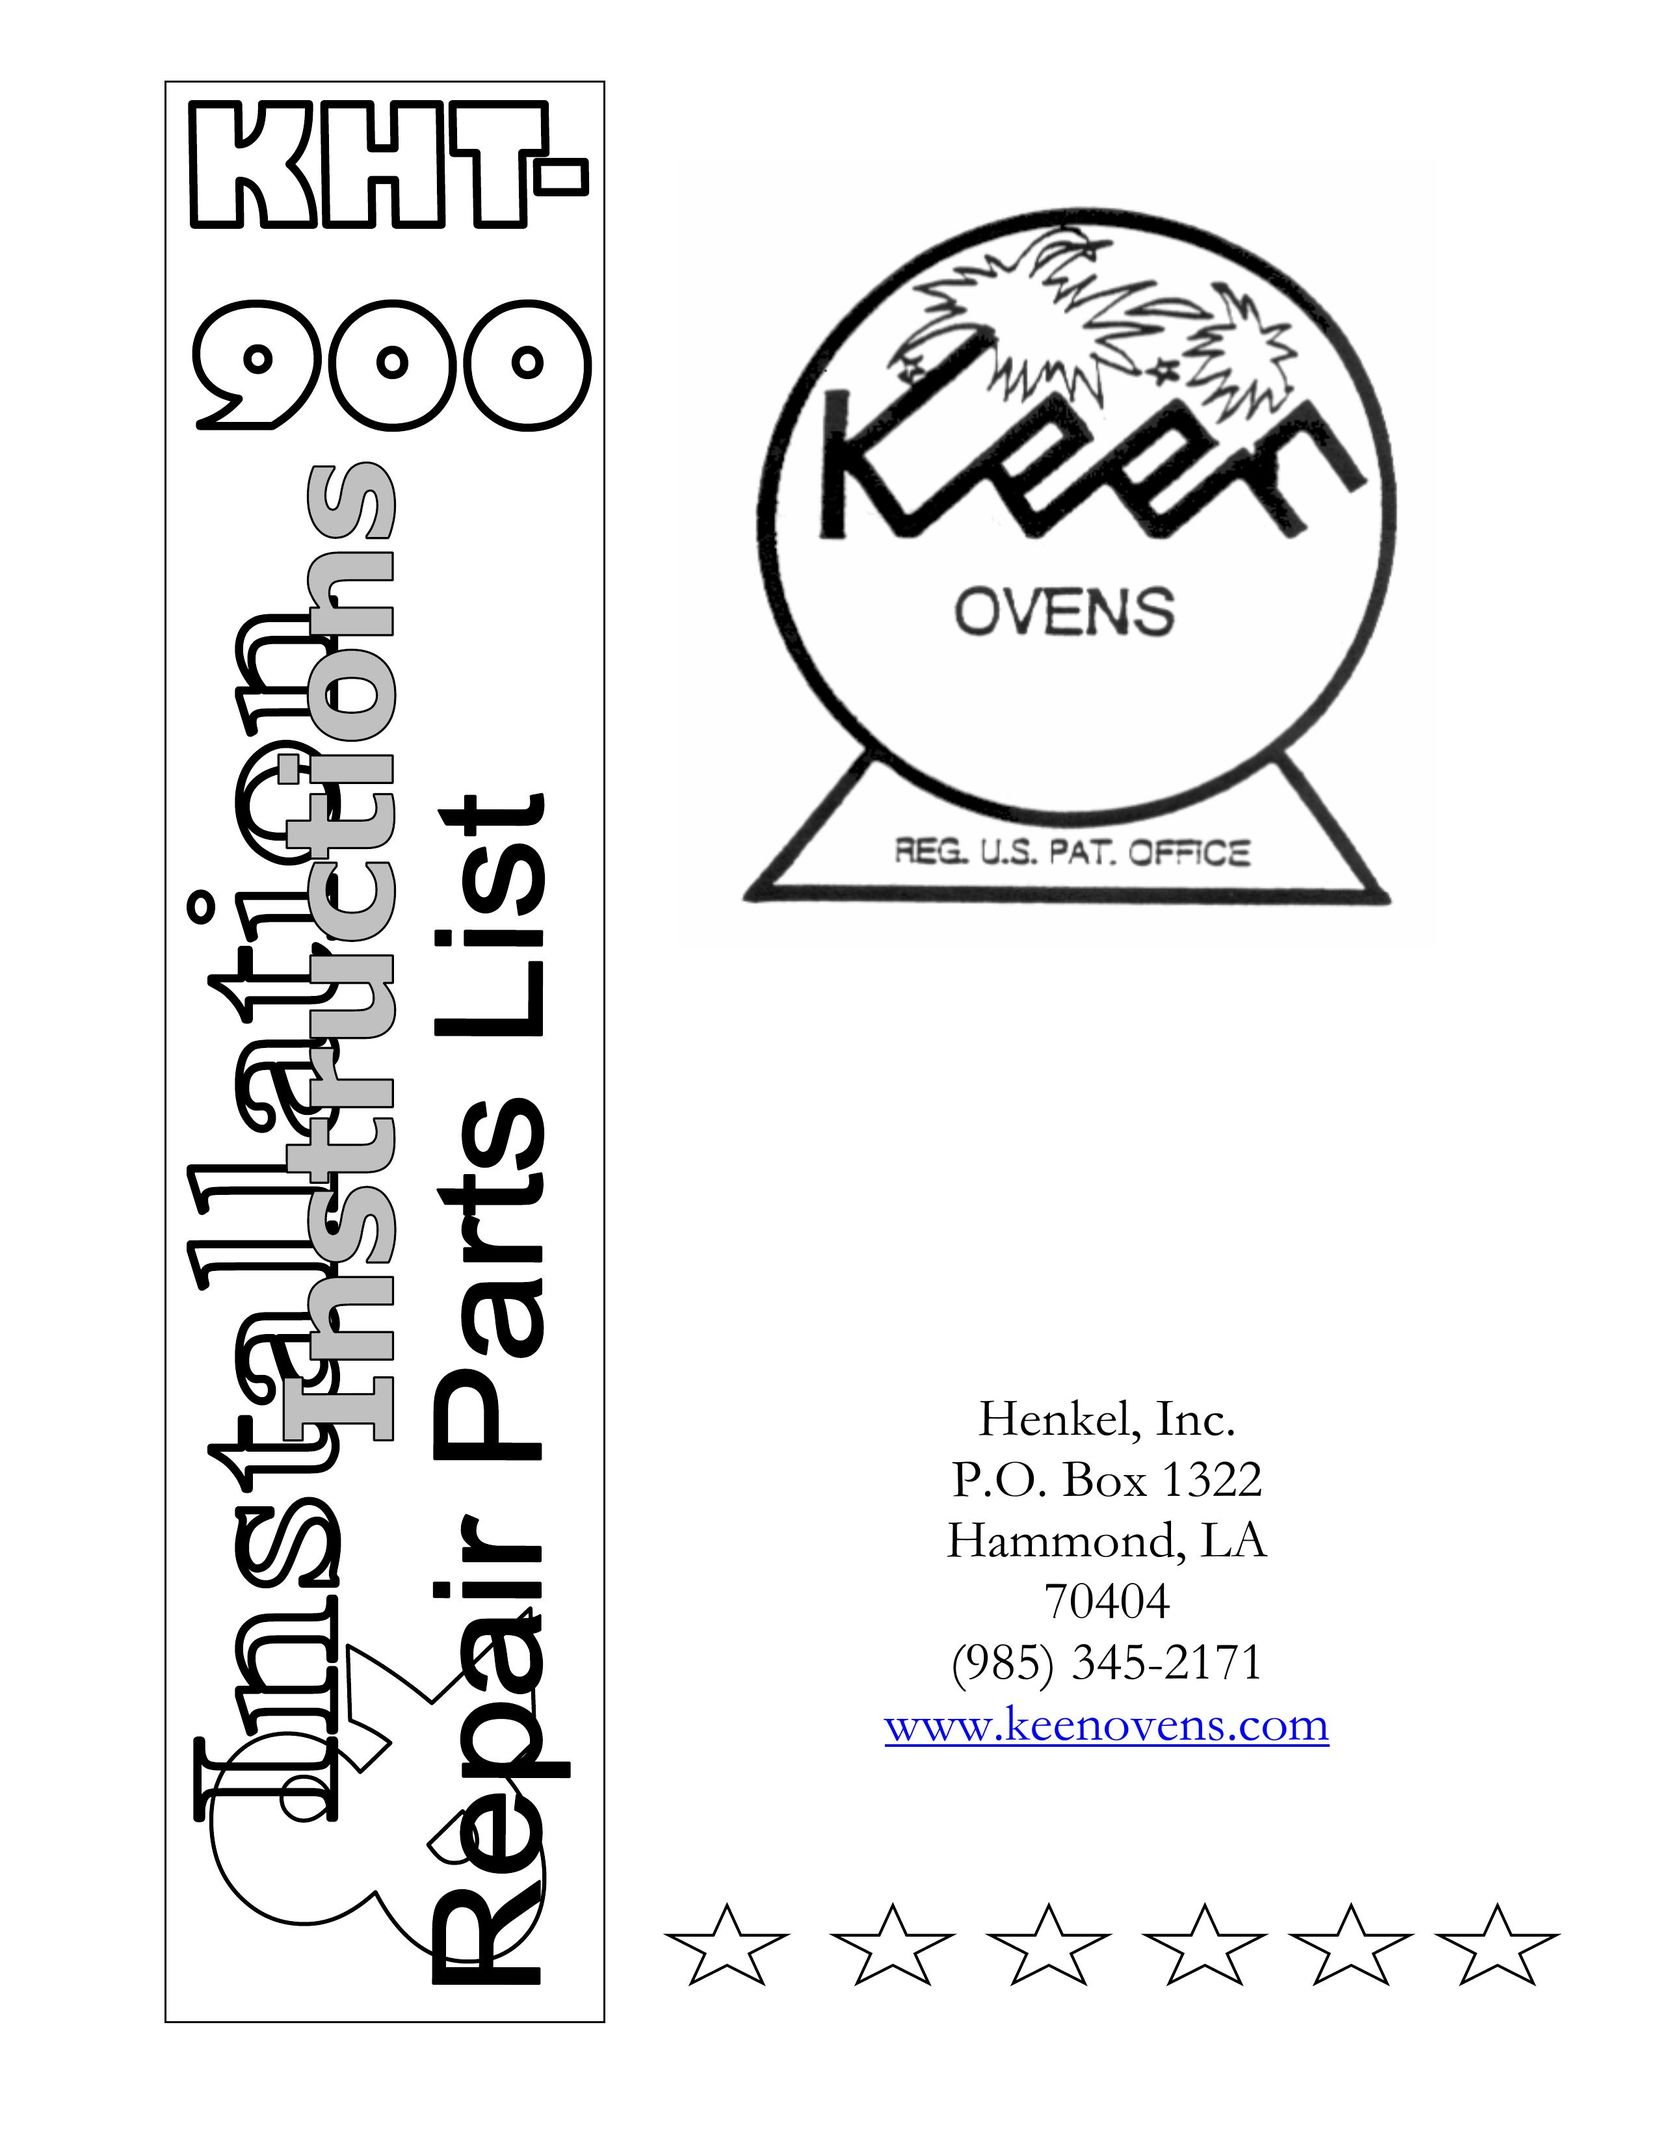 Henkel KHT-900 Oven User Manual